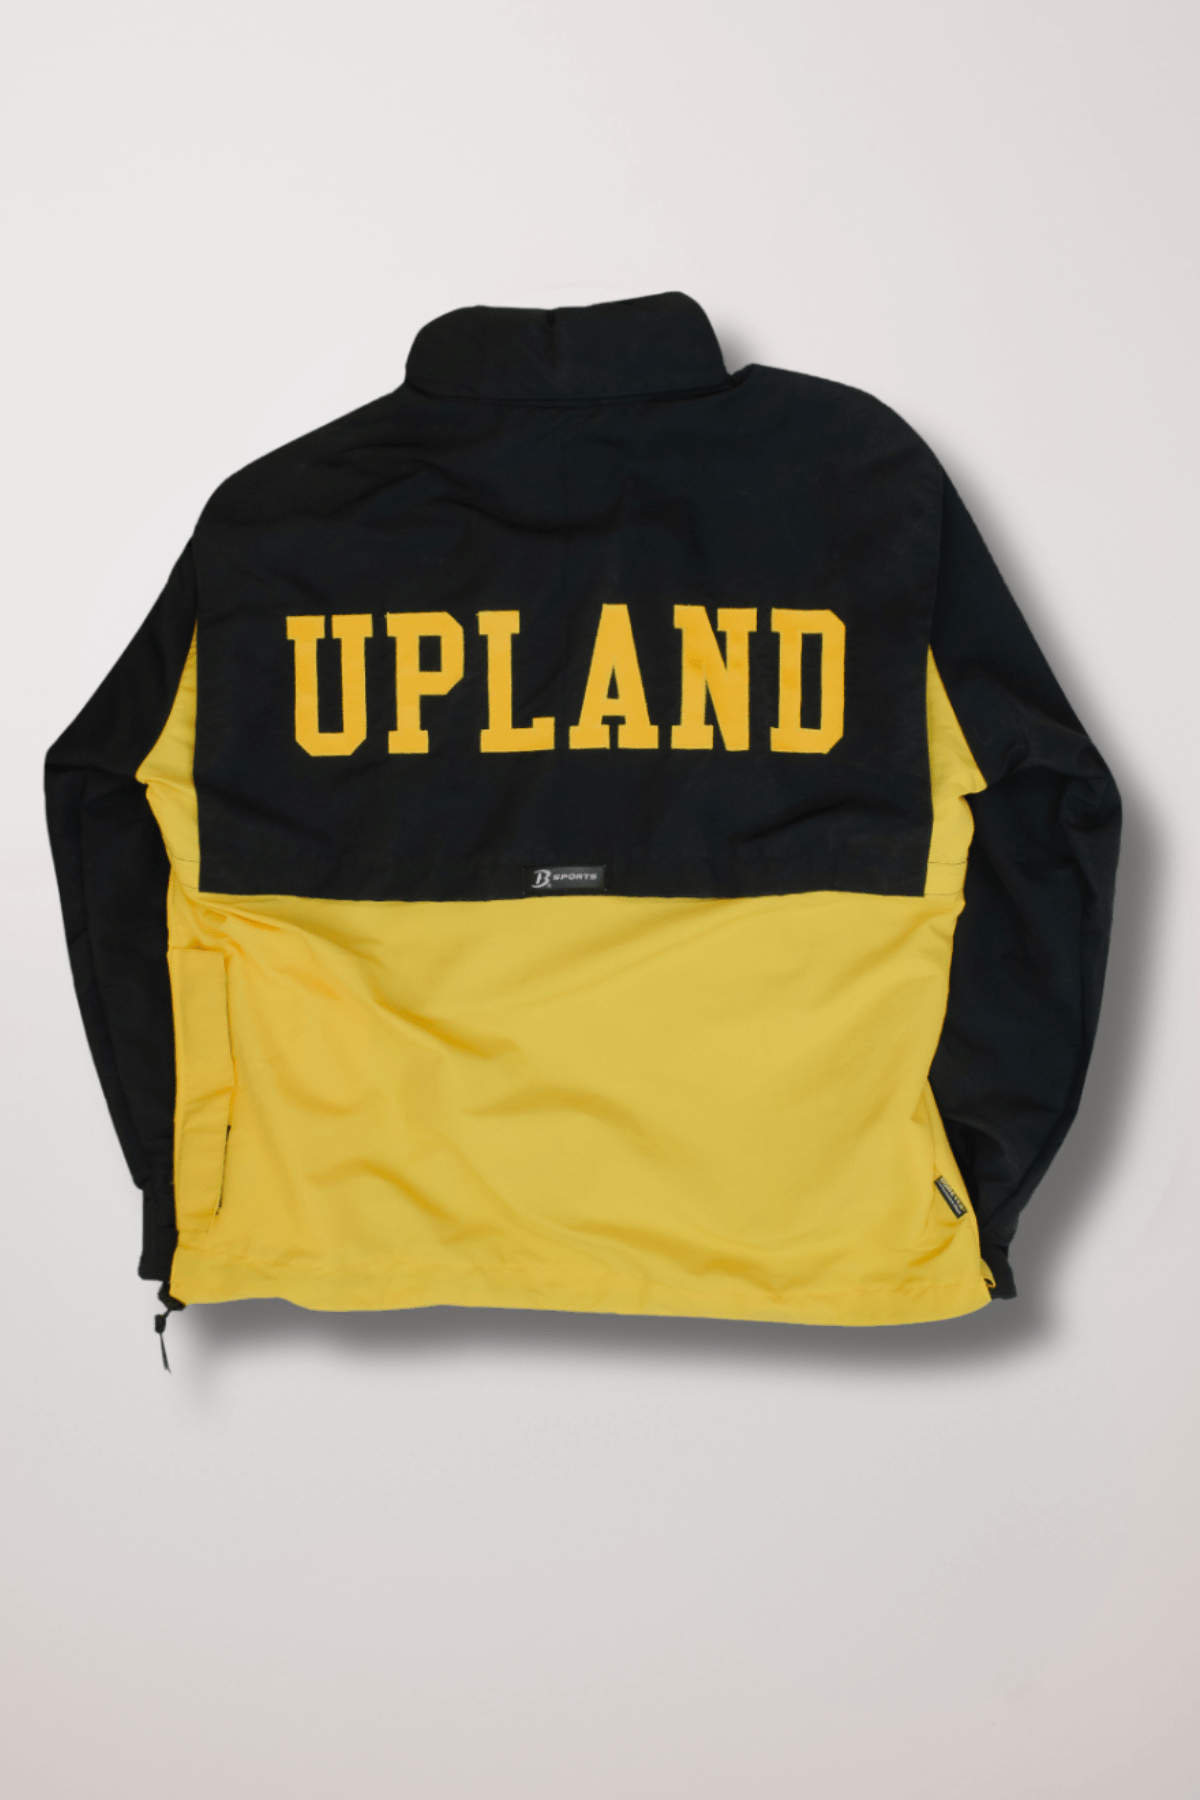 Upland Day School GORE-TEX® & Supplex Stevenson Waterproof Jacket Medium